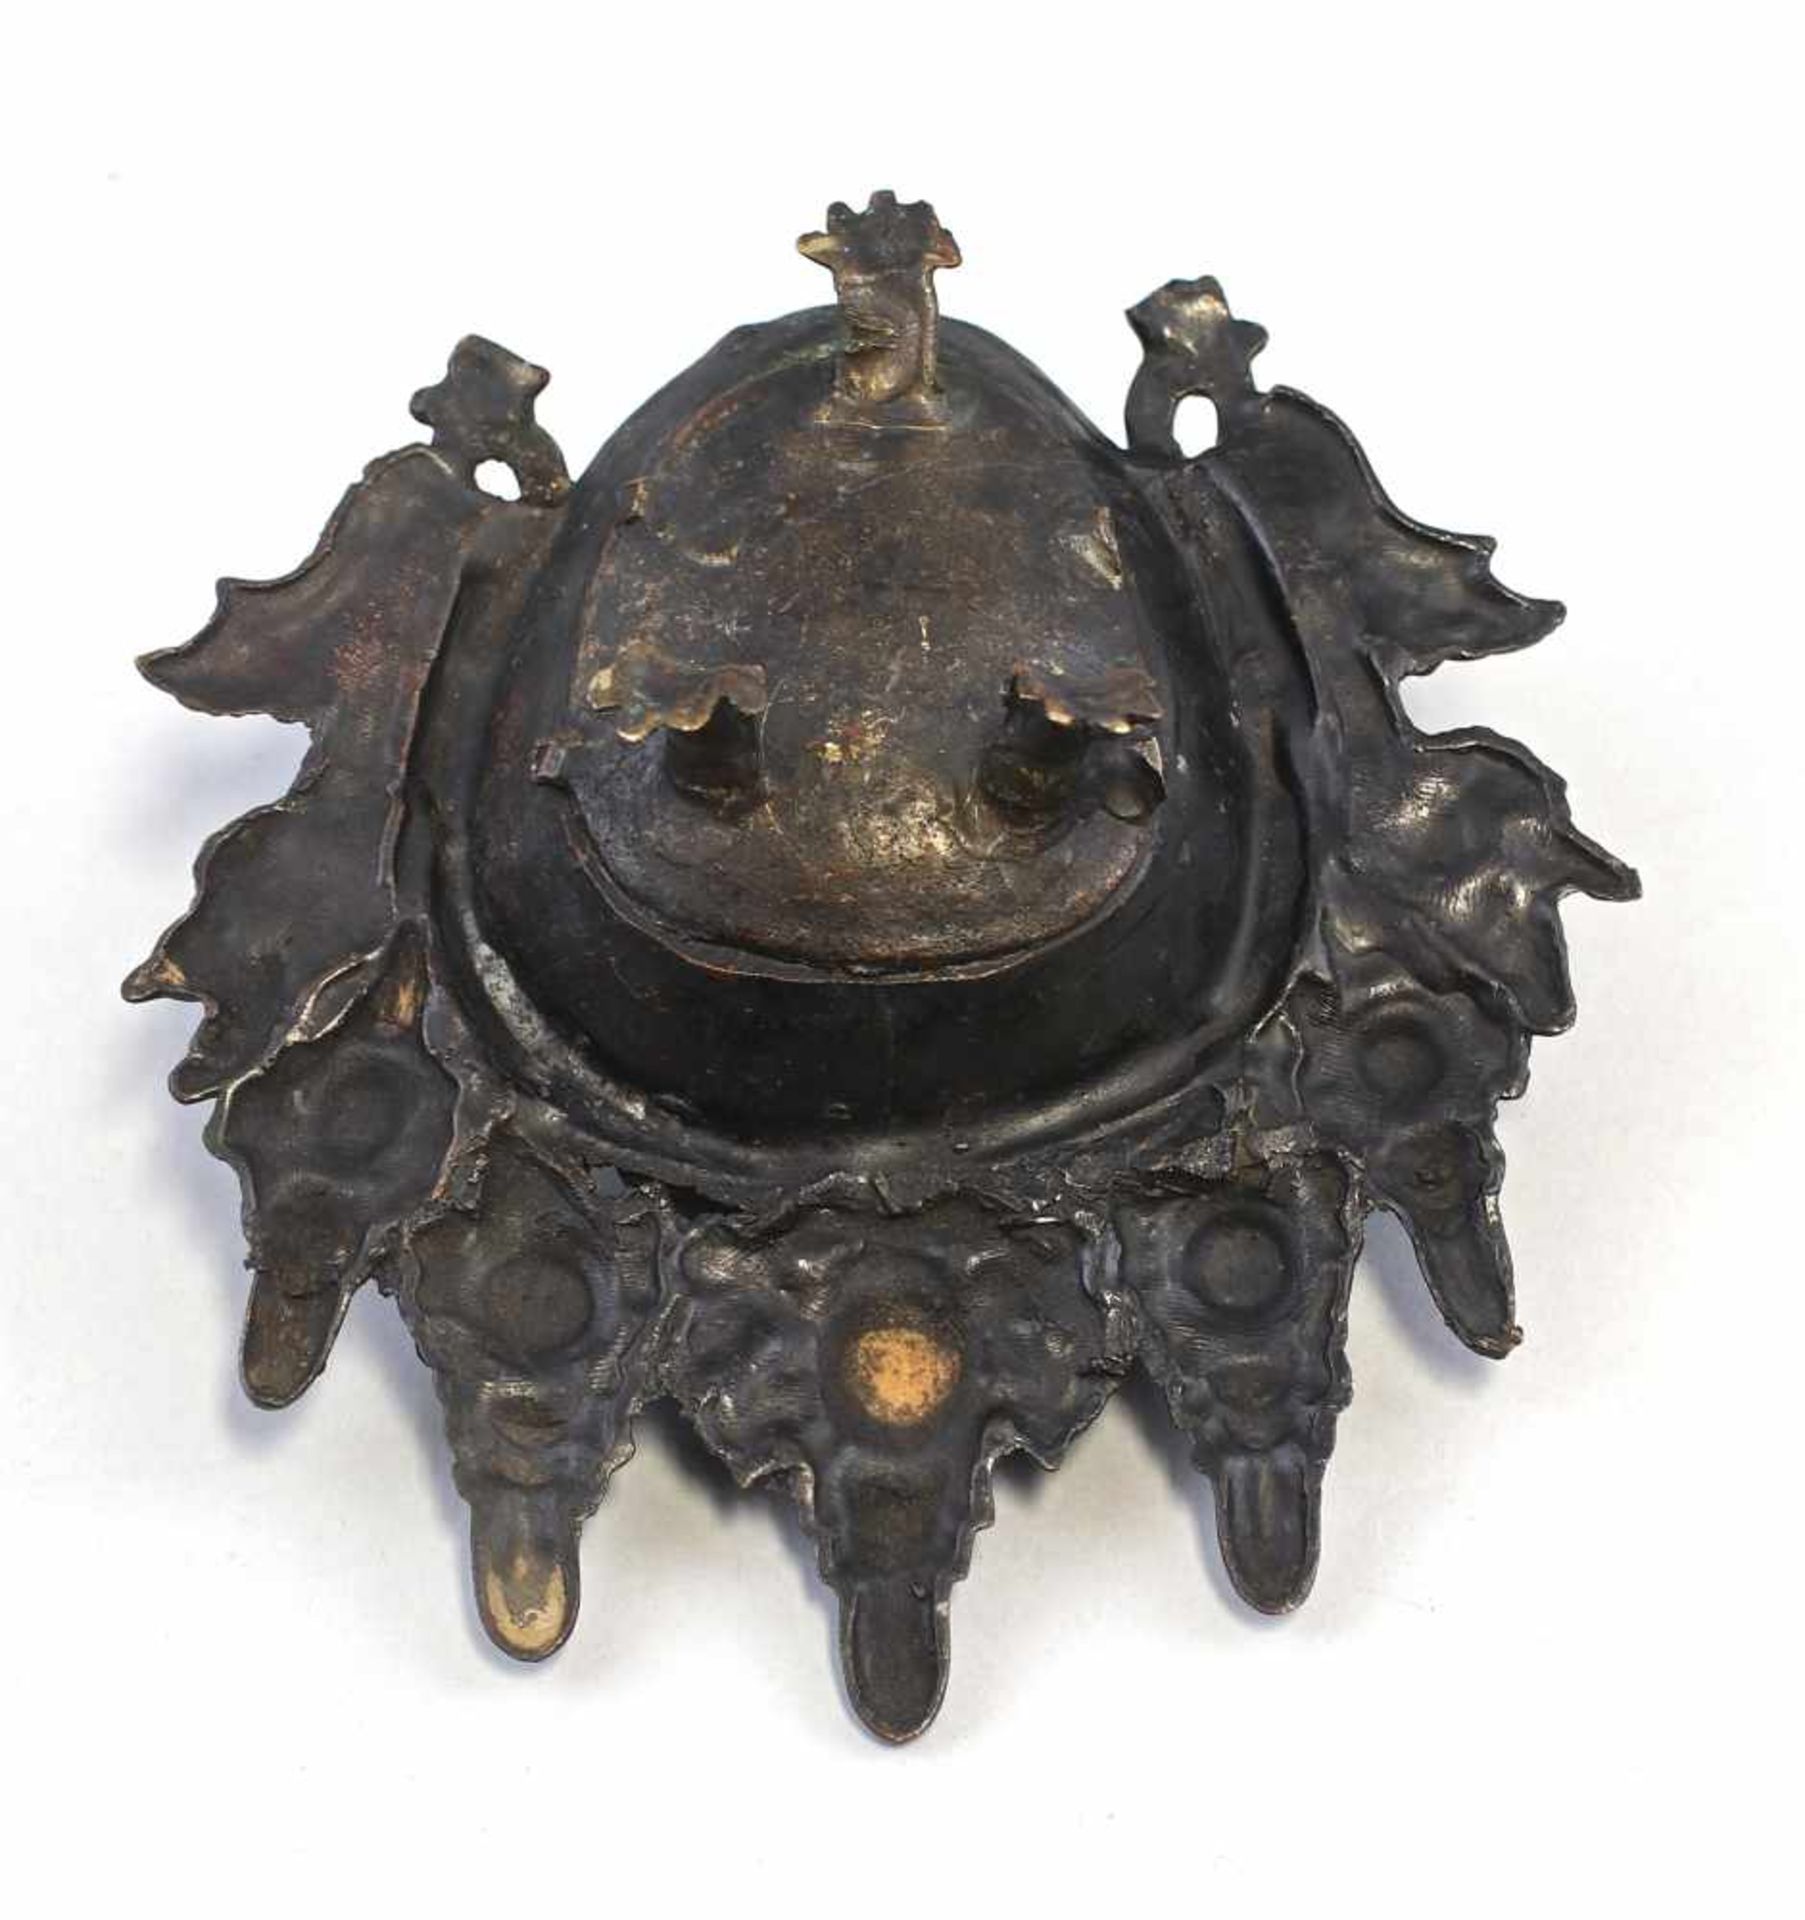 Räuchergefäß Dämonenkopfwohl Tibet/China, alt, Bronze mit dunkler Patina, auf 3 Beinen, Gefäß in - Bild 5 aus 5